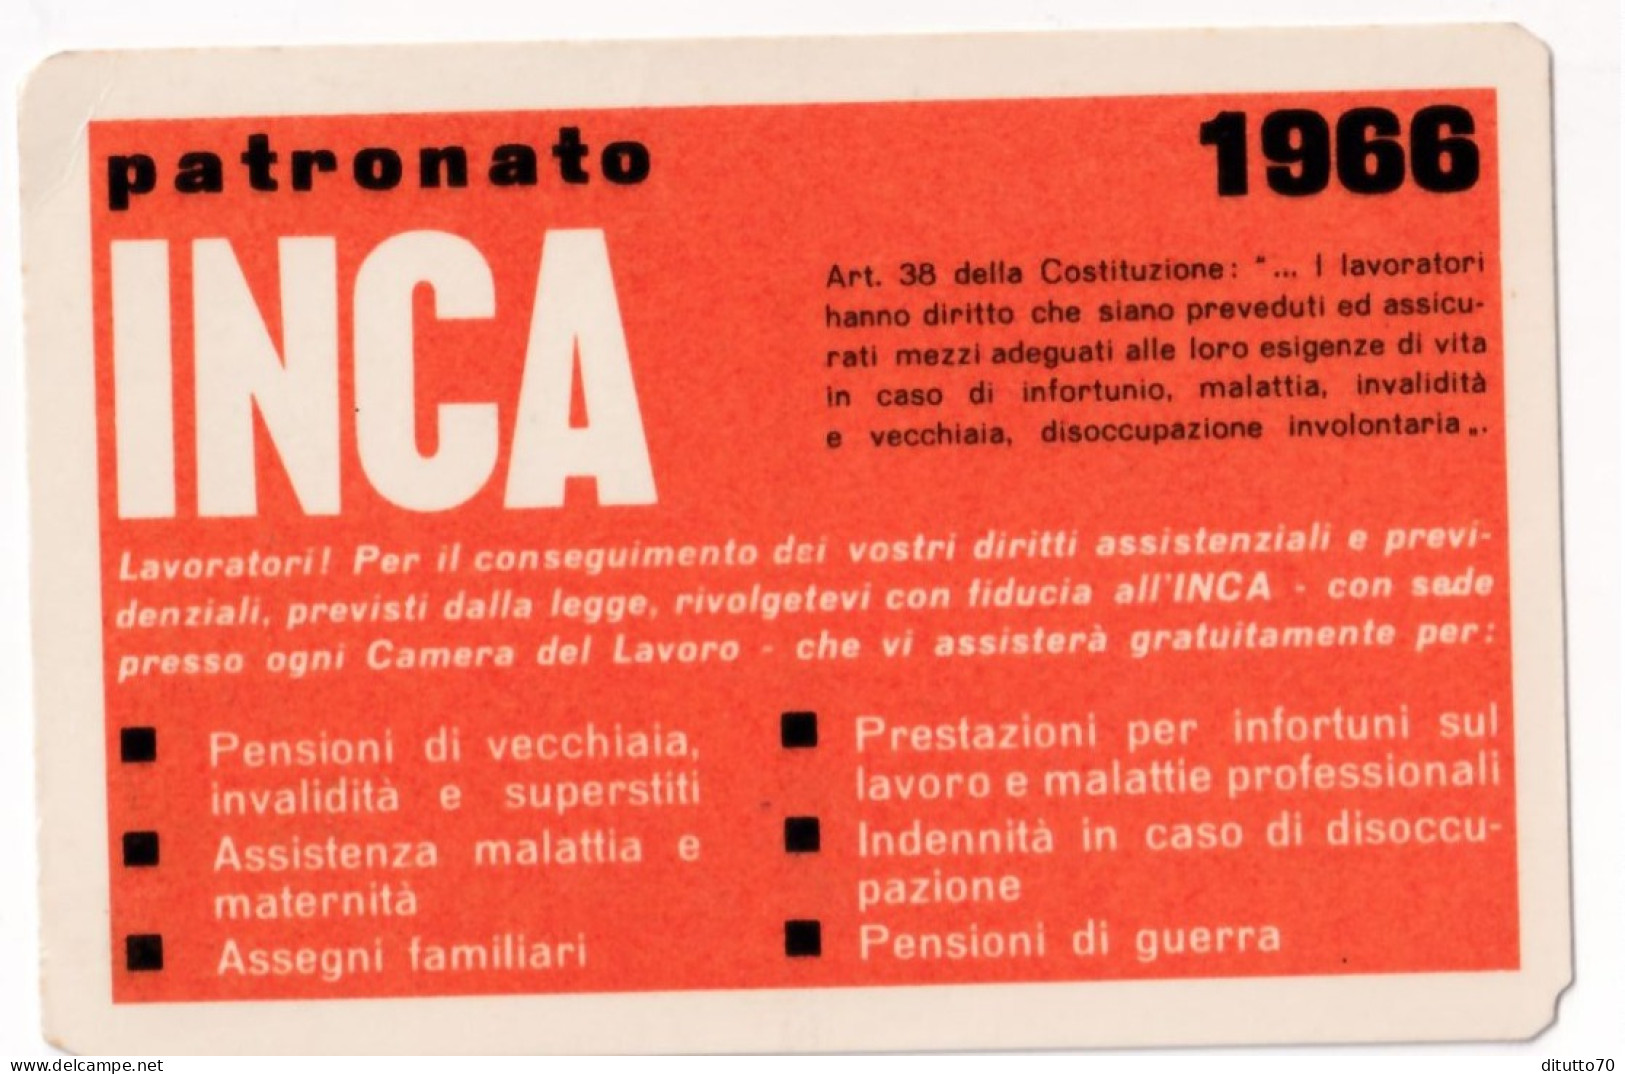 Calendarietto - Patronato Inca - Anno 1966 - Small : 1961-70